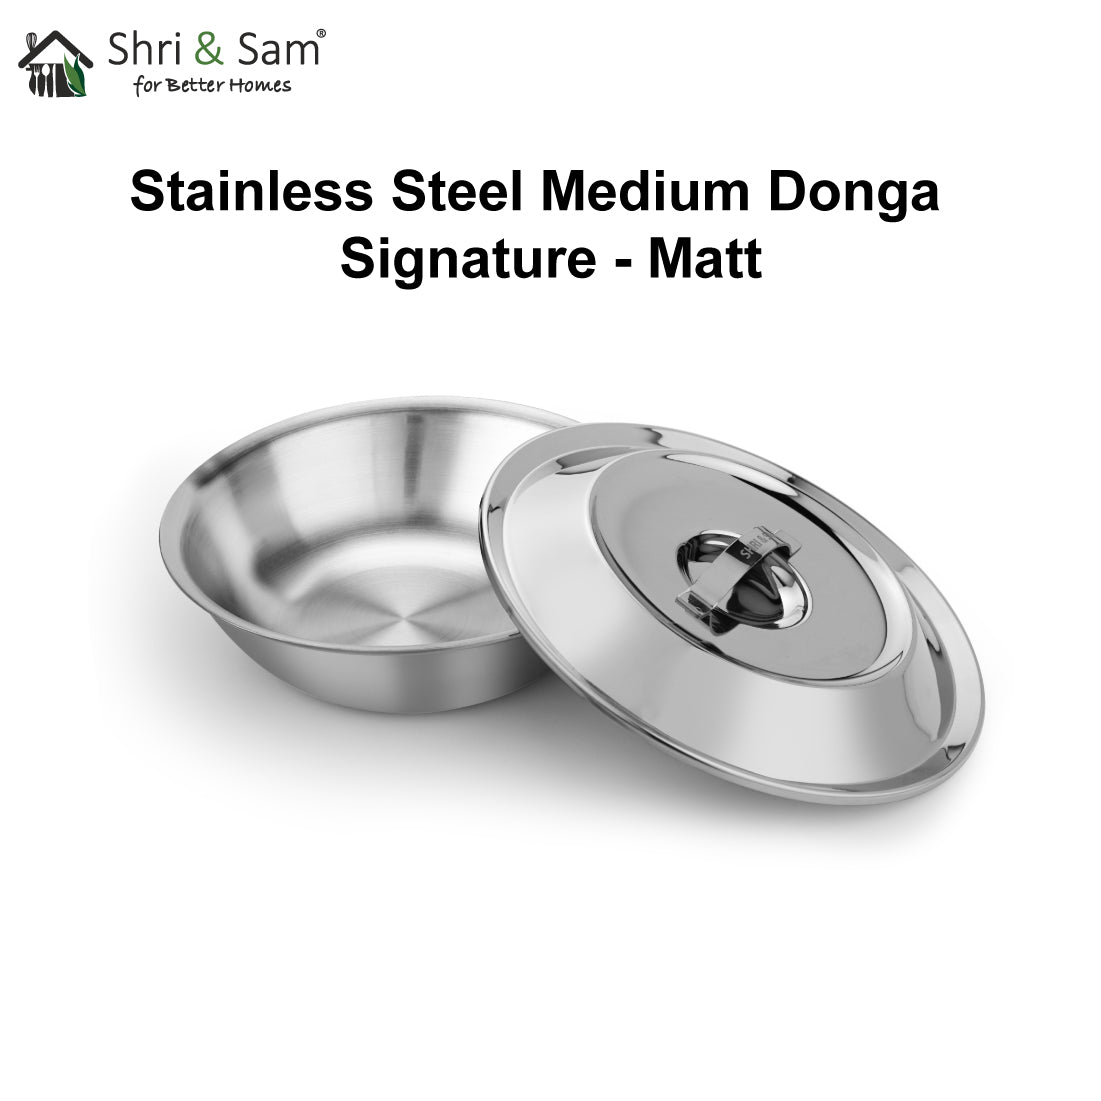 Stainless Steel Medium Donga Signature - Matt